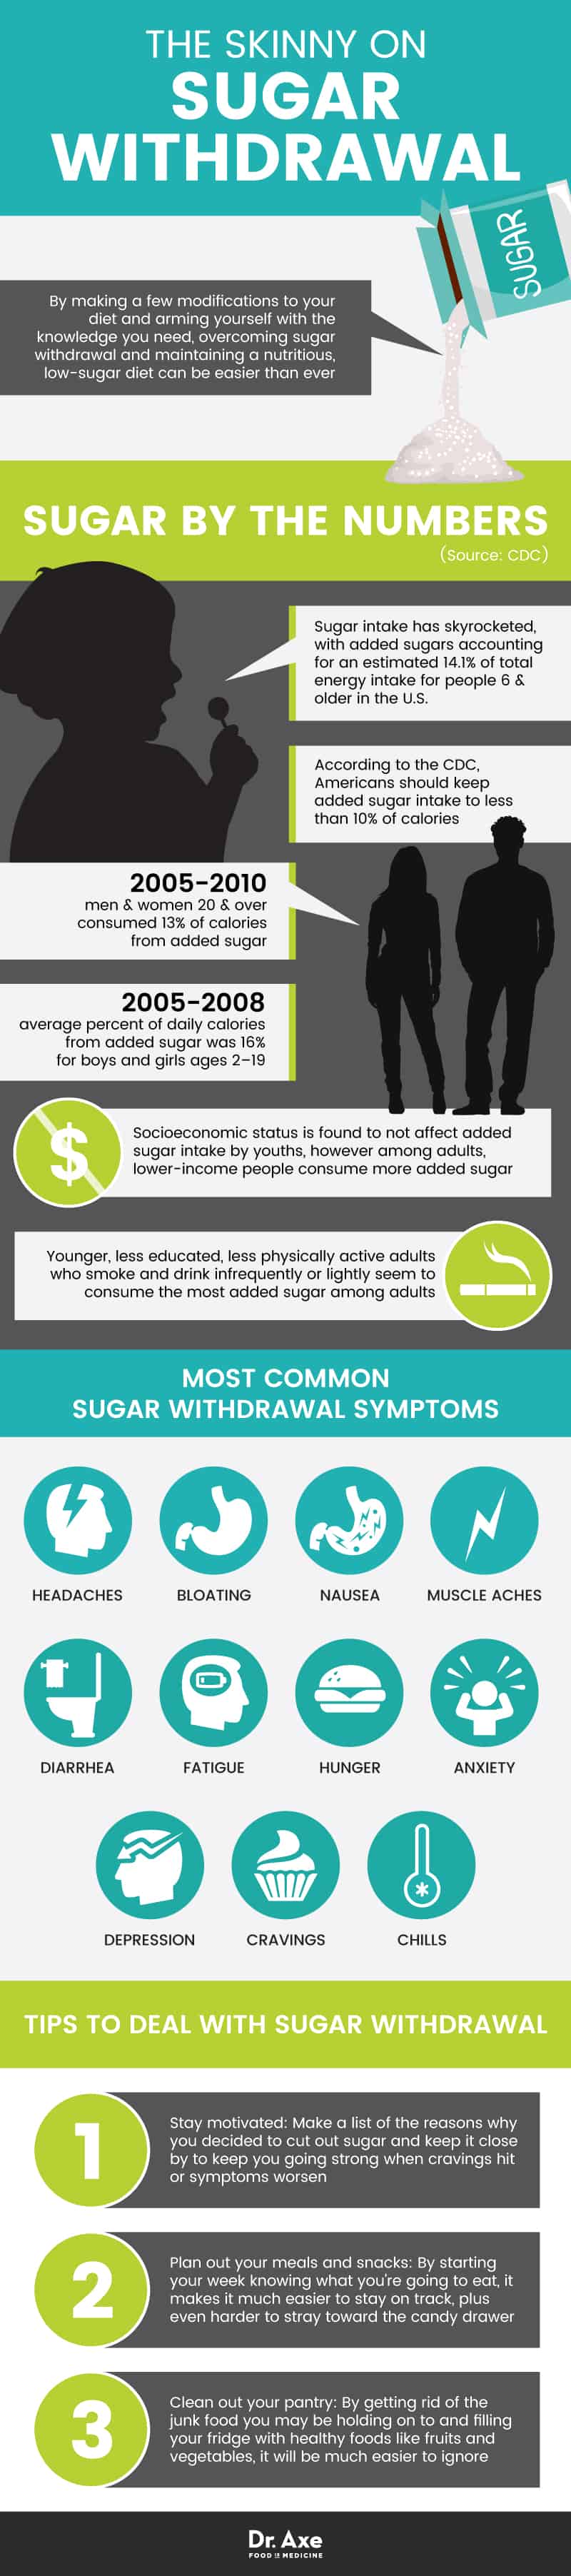 Sugar withdrawal - Dr. Axe